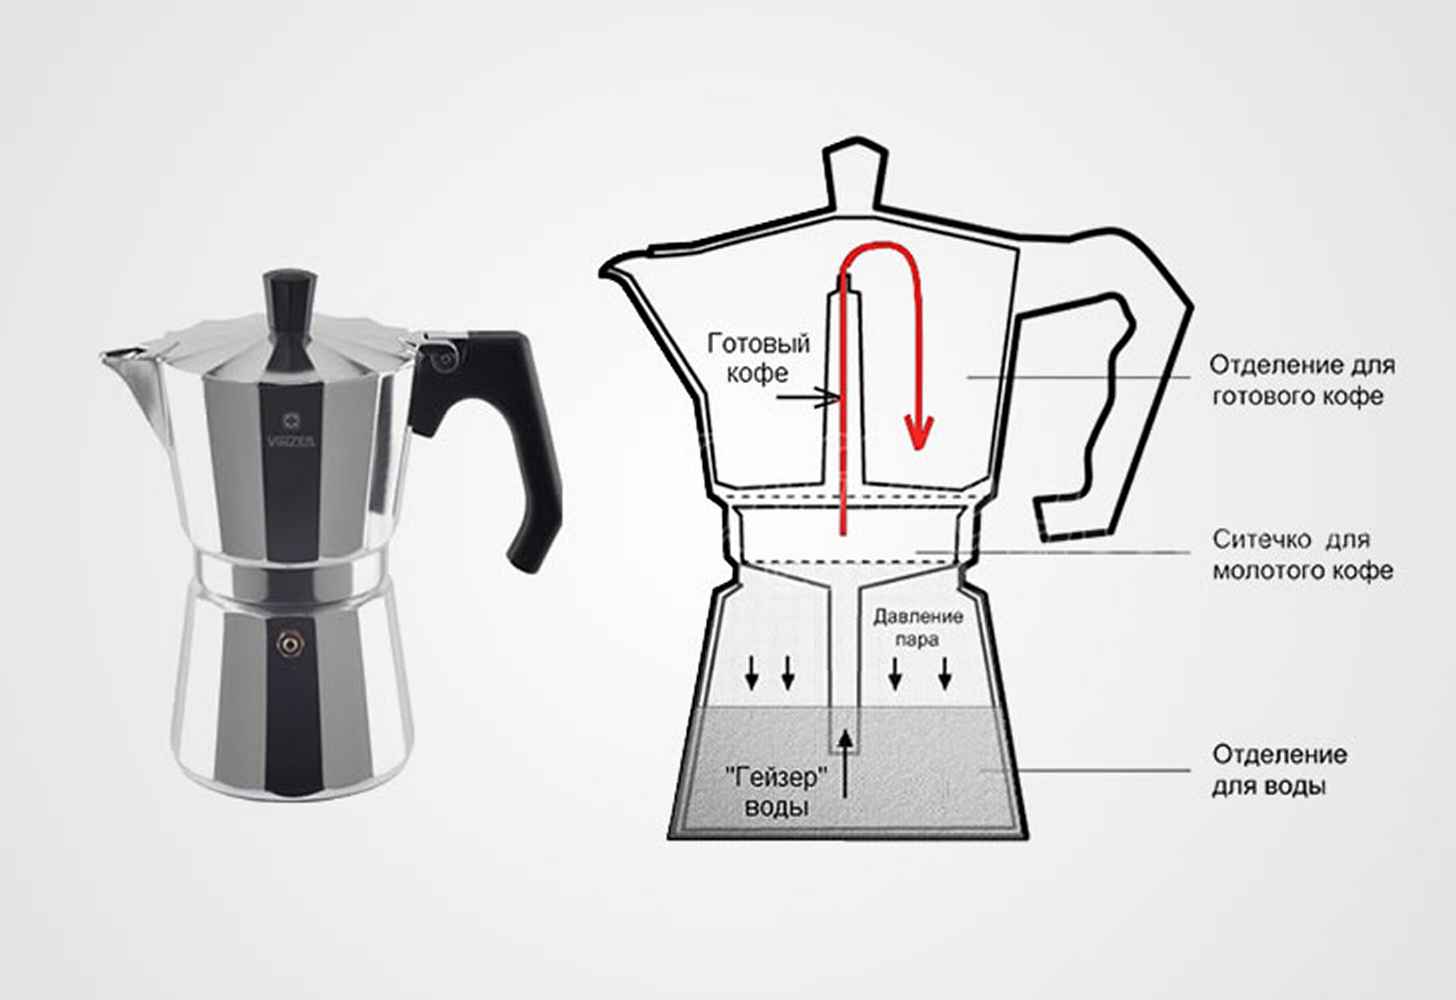 Инструкция к гейзерной кофеварке из ссср, особенности работы